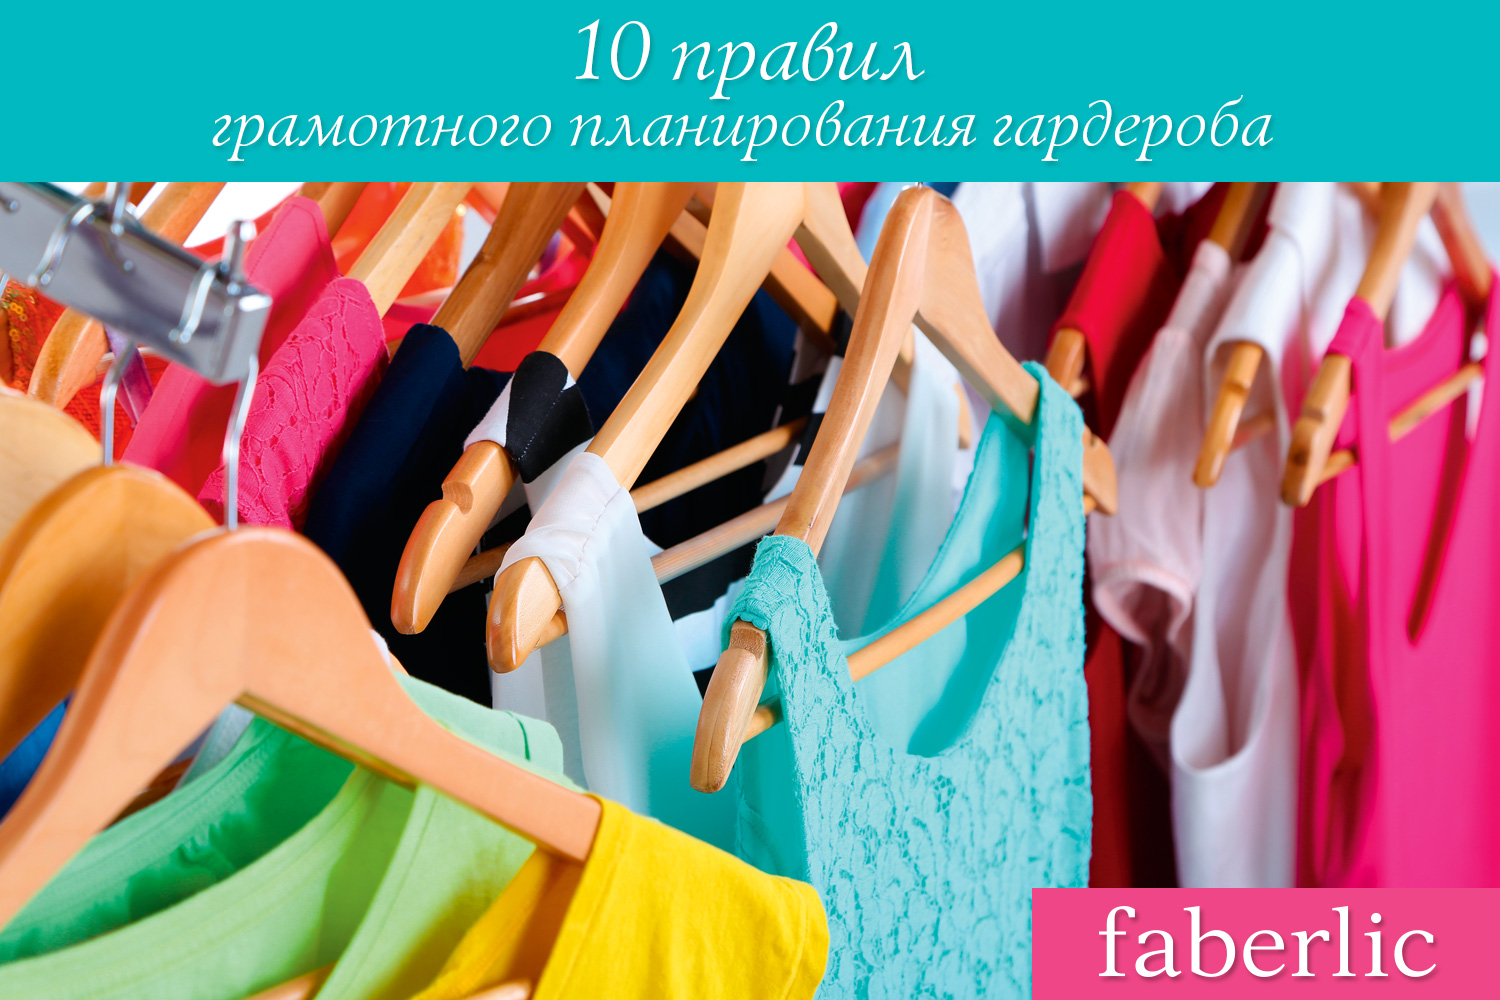 10-pravil-garderob